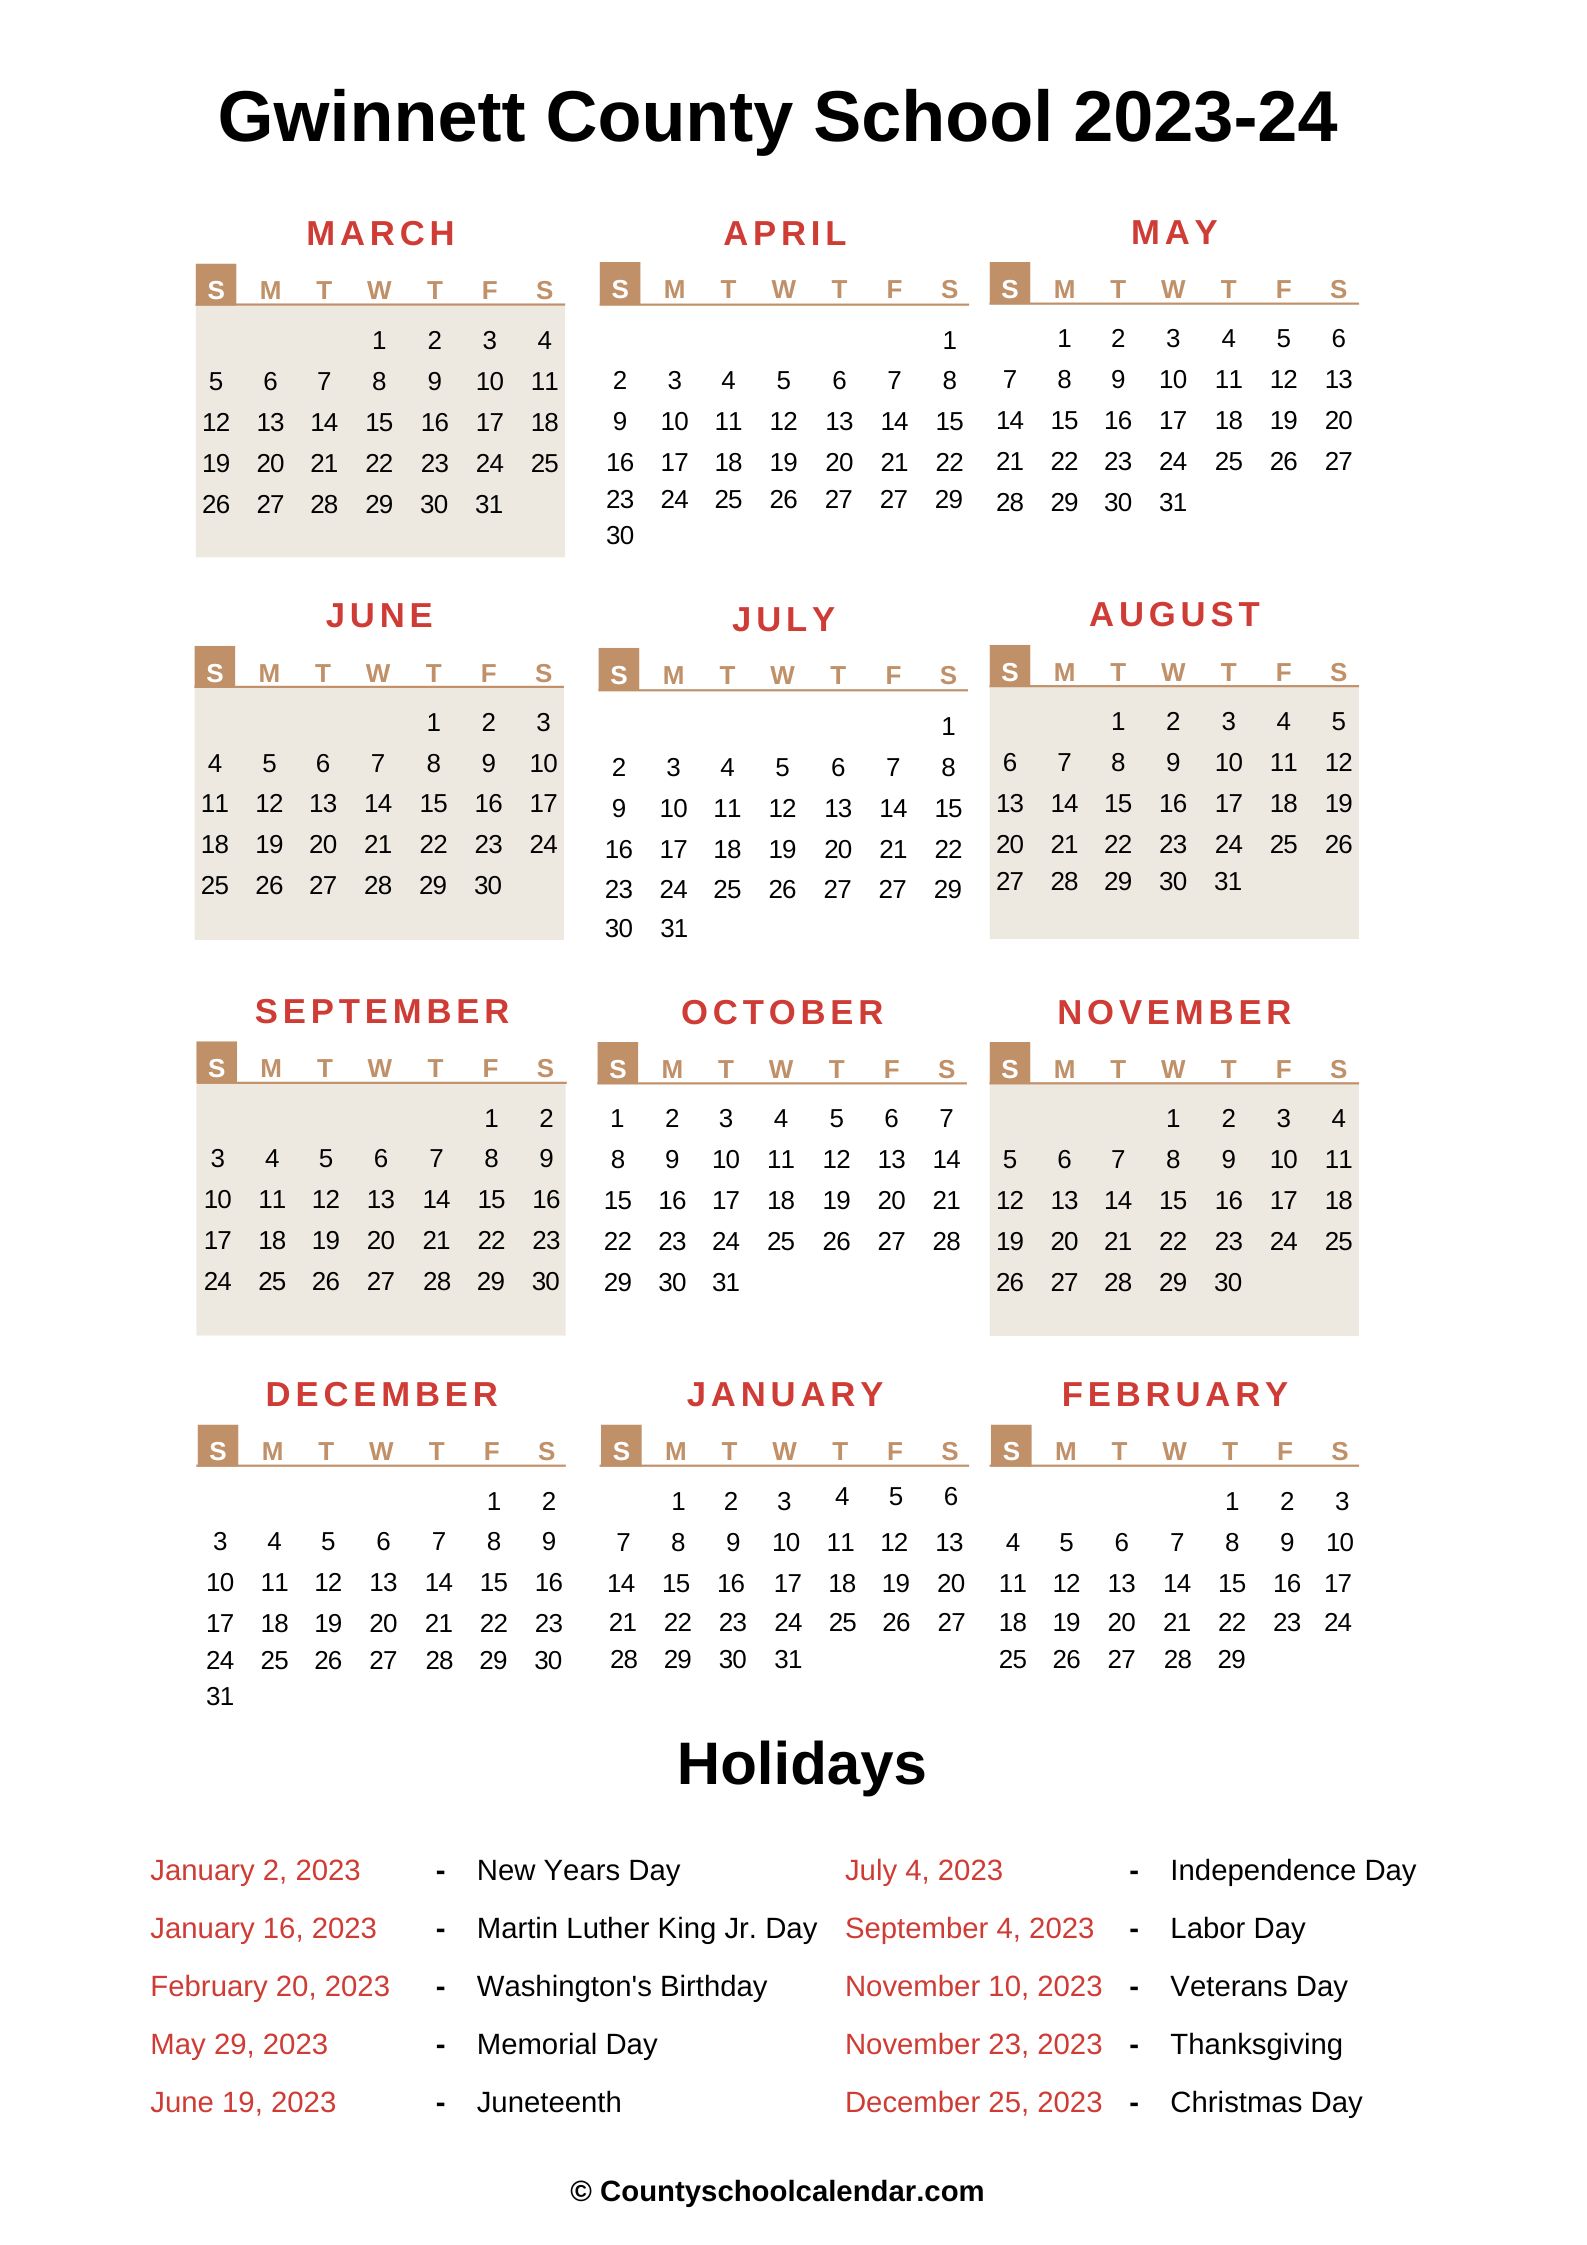 Gwinnett County School Calendar 2022 2023 With Holidays